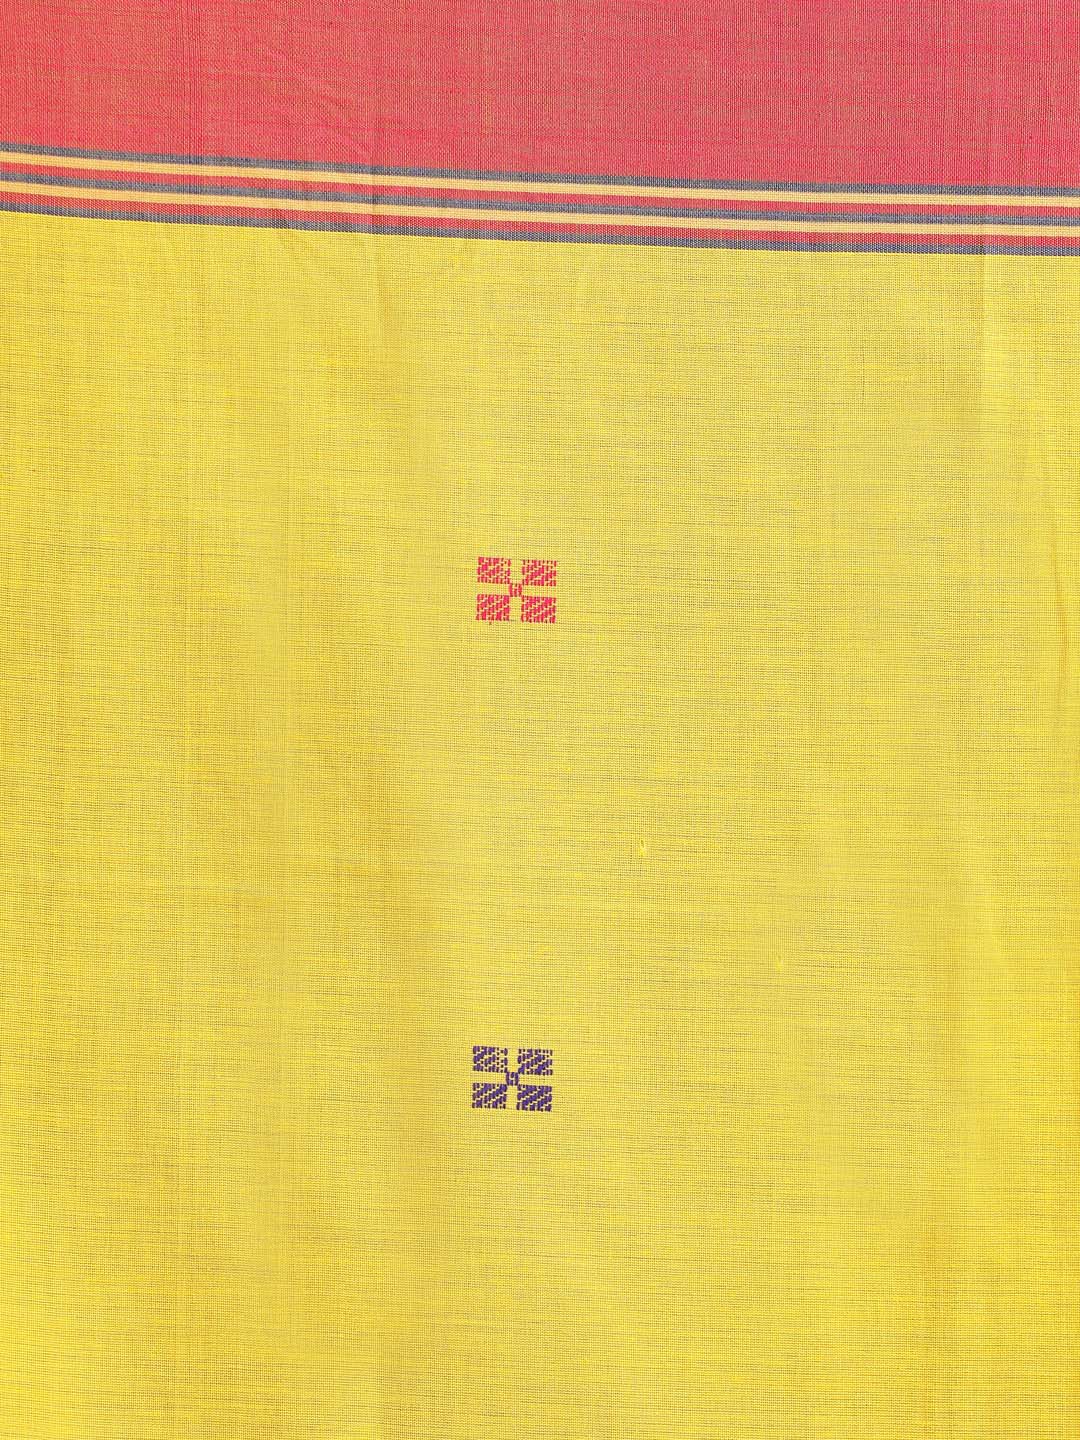 Indethnic Yellow Bengal Handloom Pure Cotton Saree Daily Saree - Saree Detail View